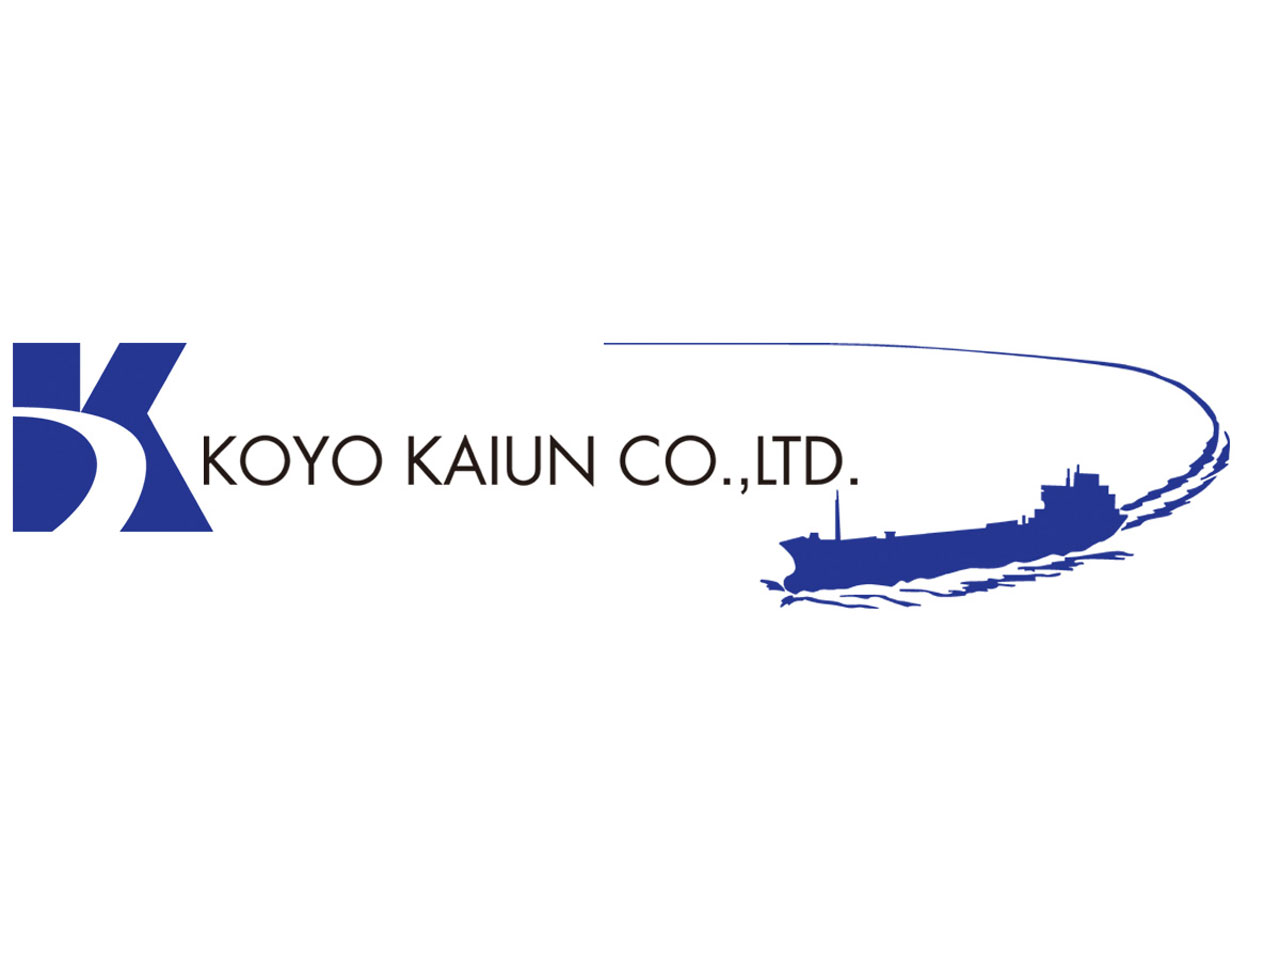 同社は、液体化学品を専門に運ぶ「ケミカルタンカー」を運航する海運会社。